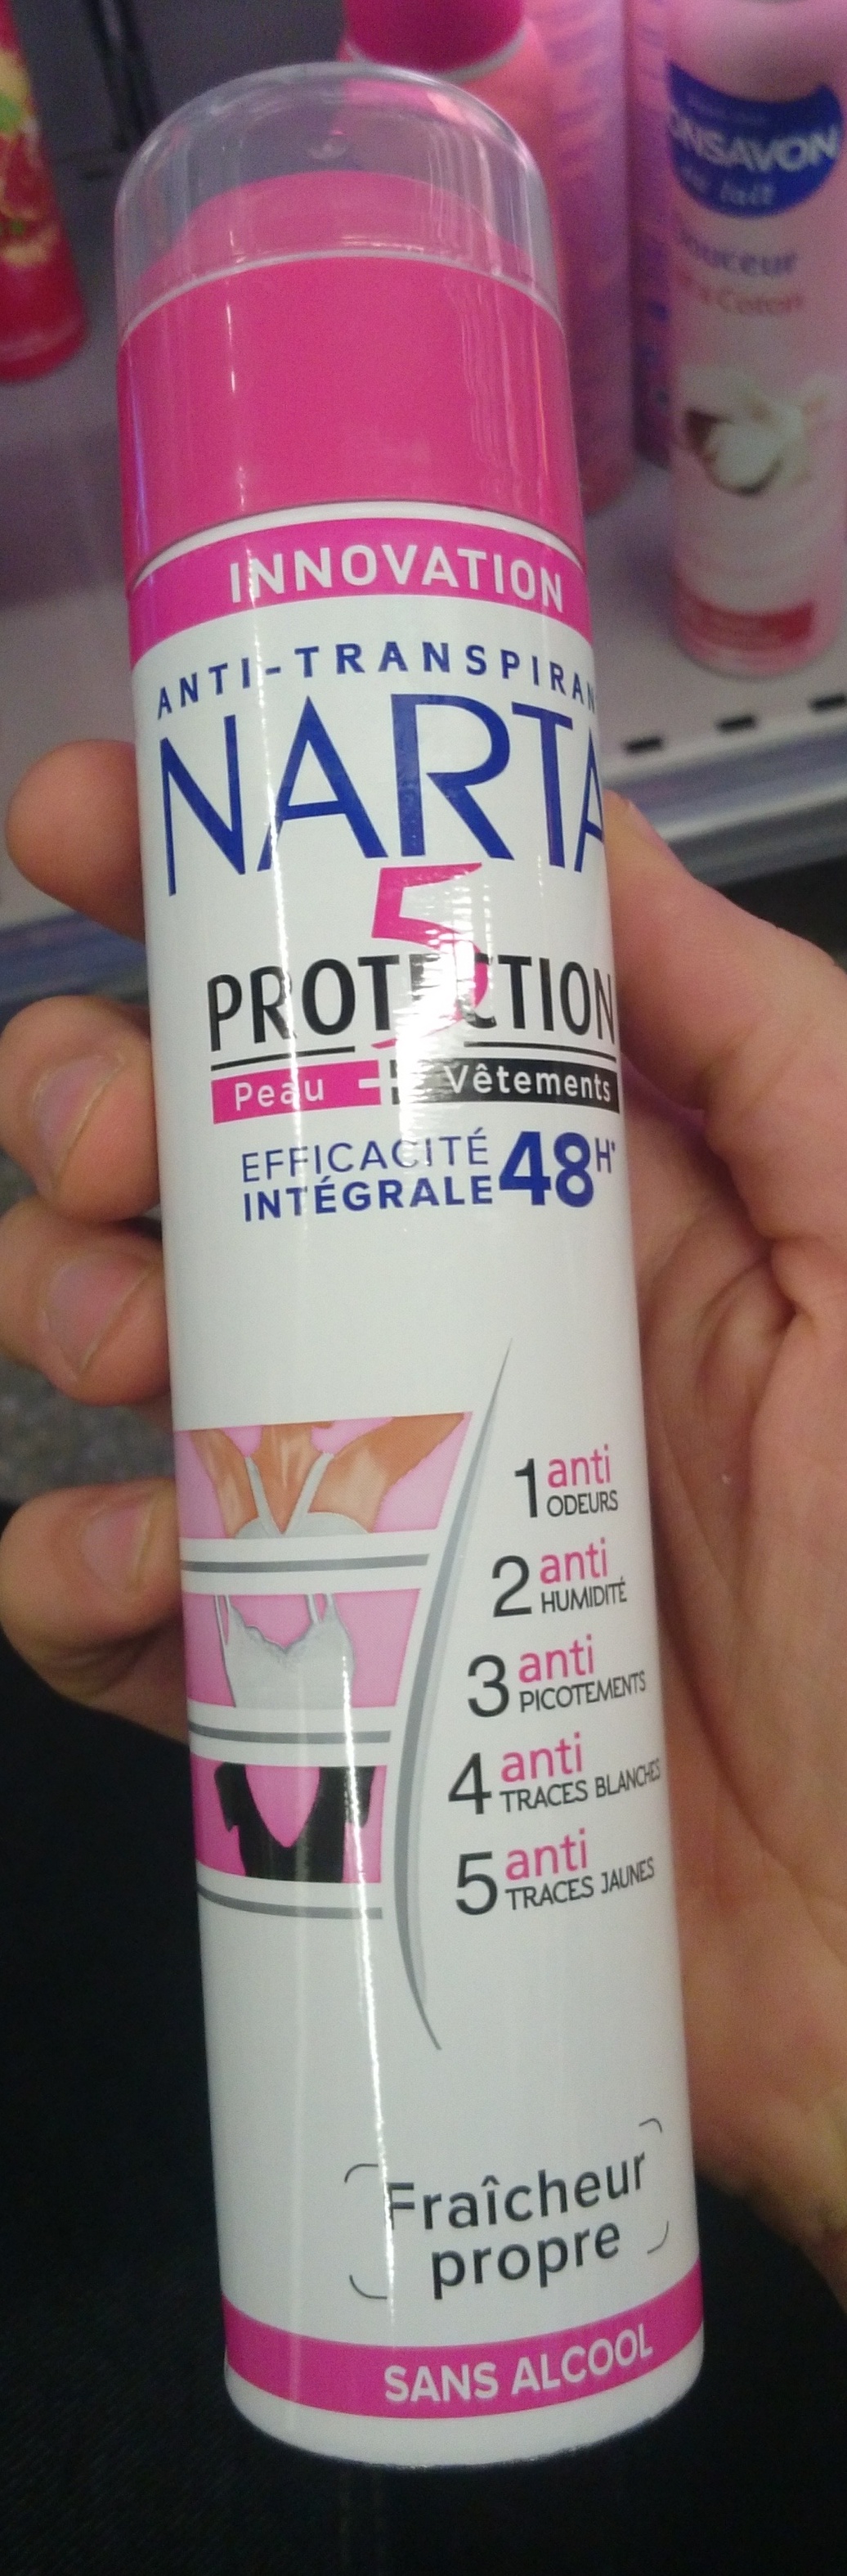 5 protections efficacité intégrale 48h - Produkto - fr